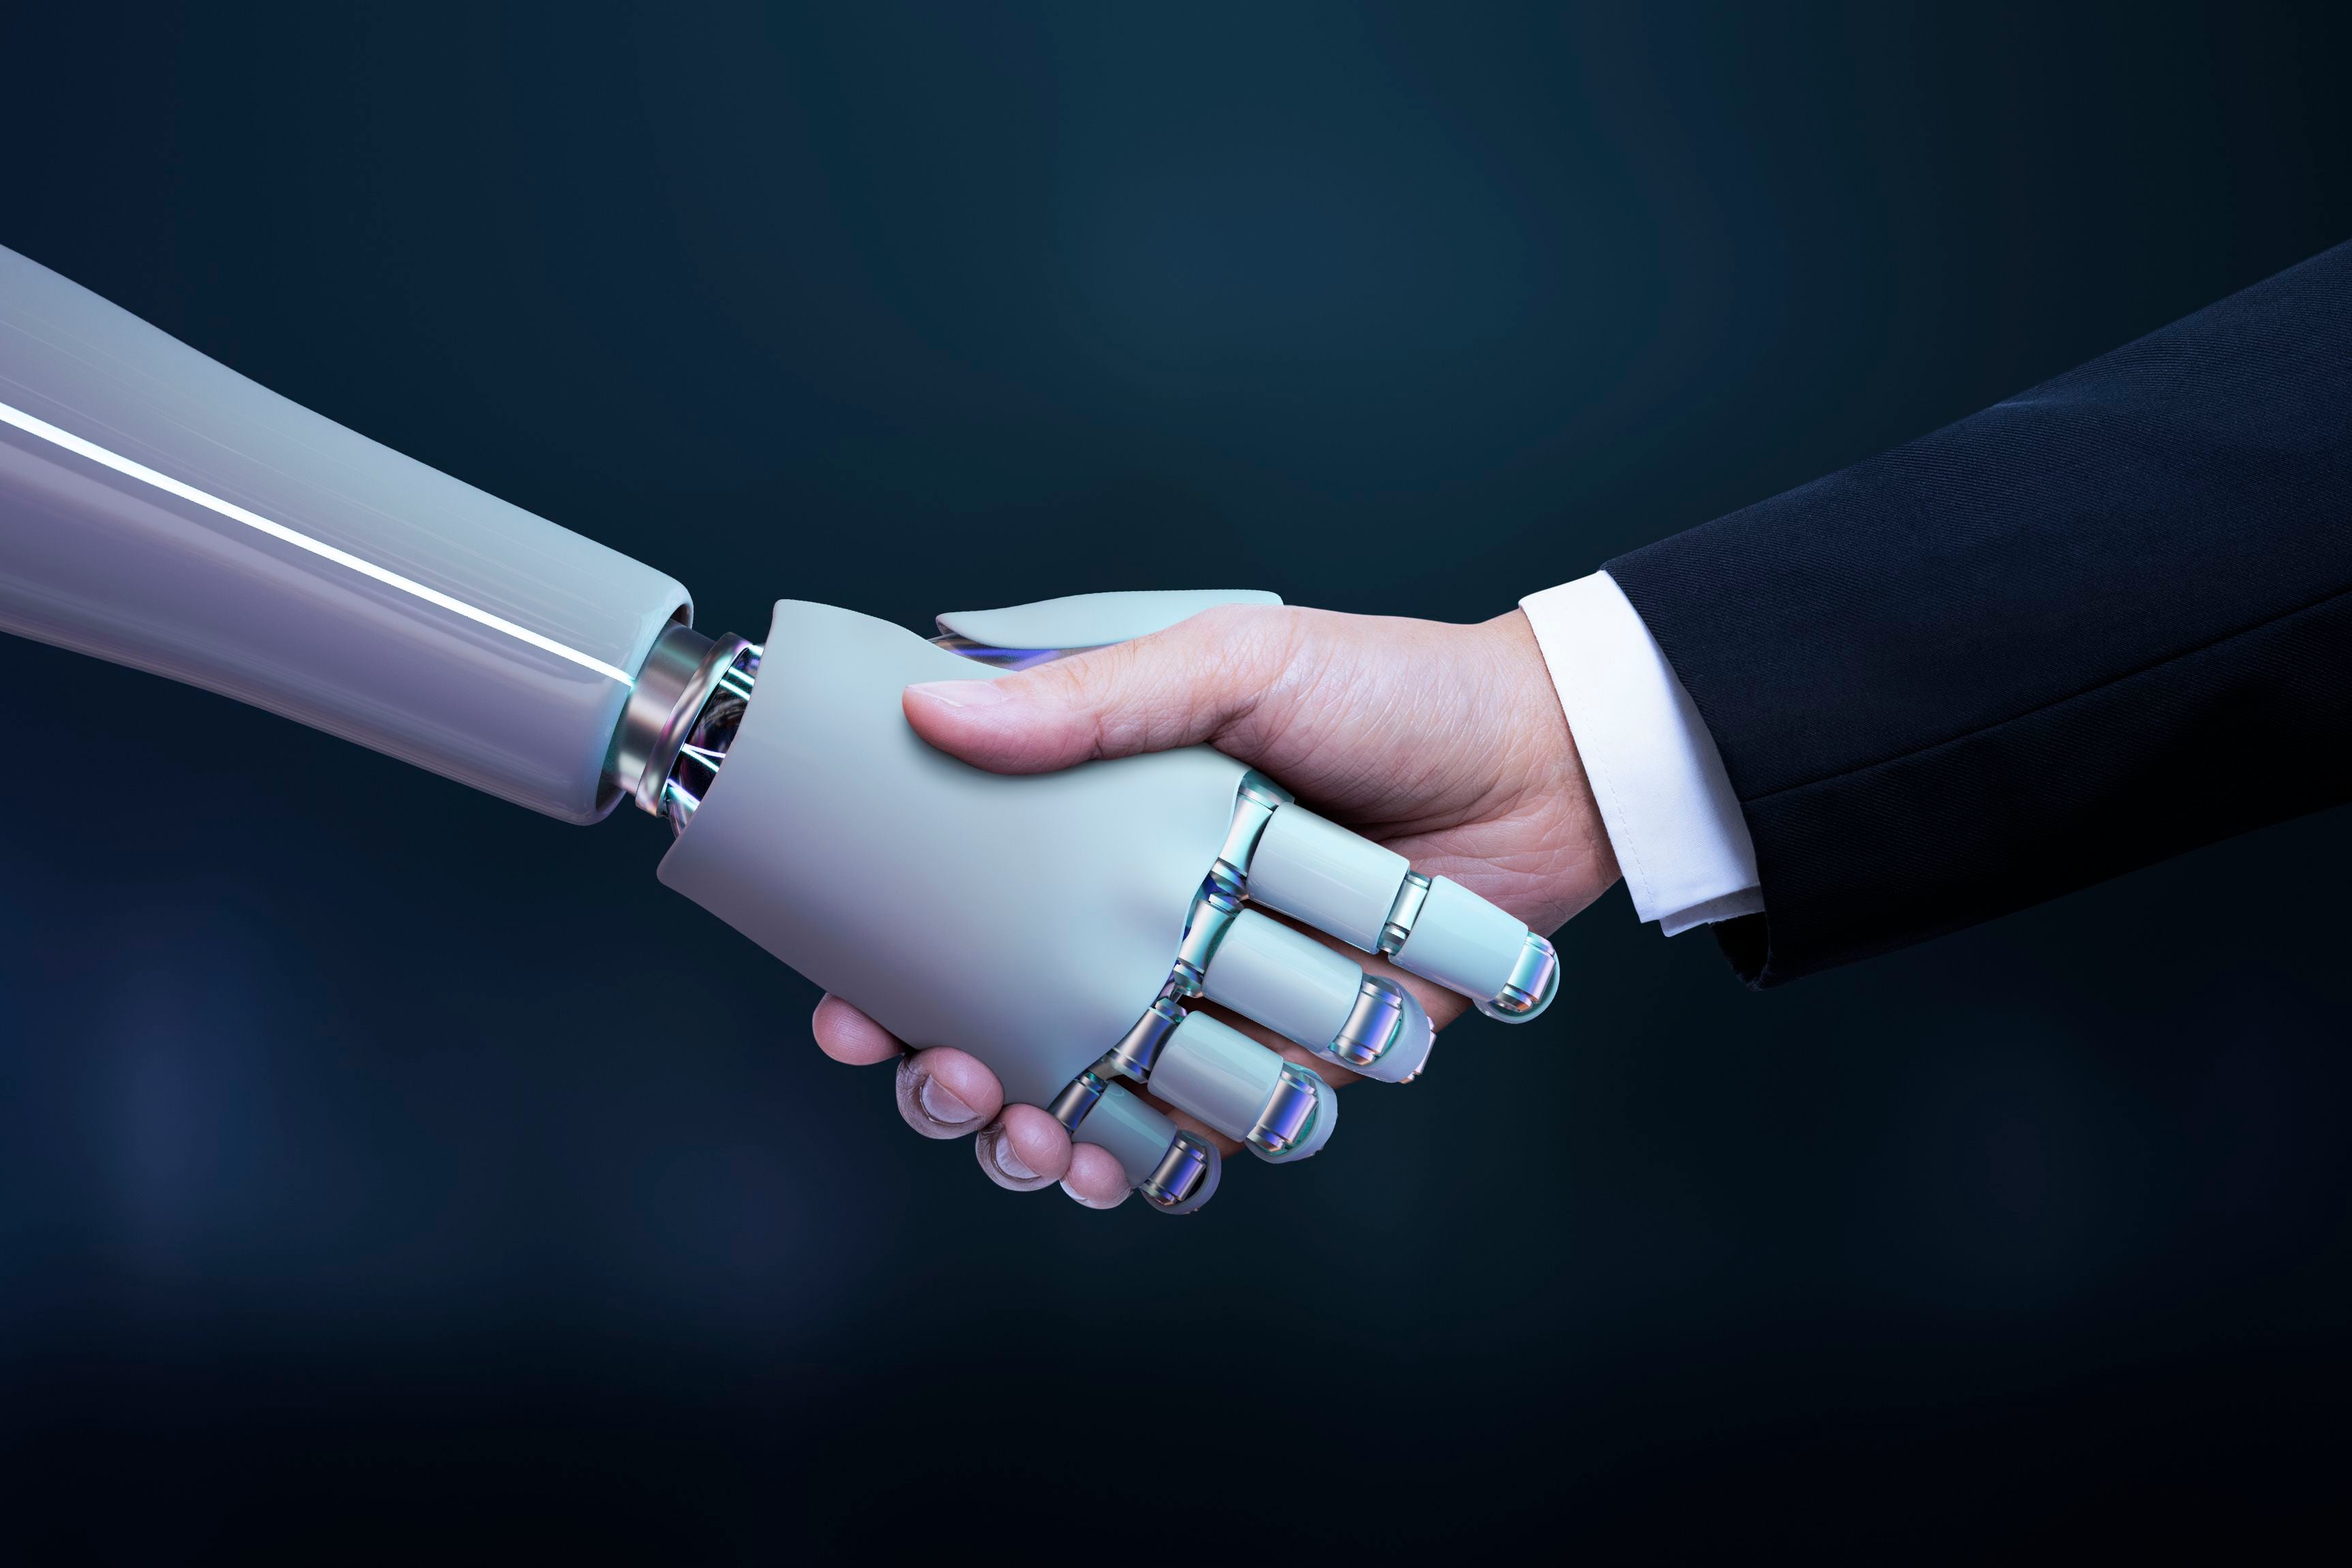 La IA engloba enfoques diversos, desde sistemas especializados hasta una general que compite con la inteligencia humana. (Freepik)